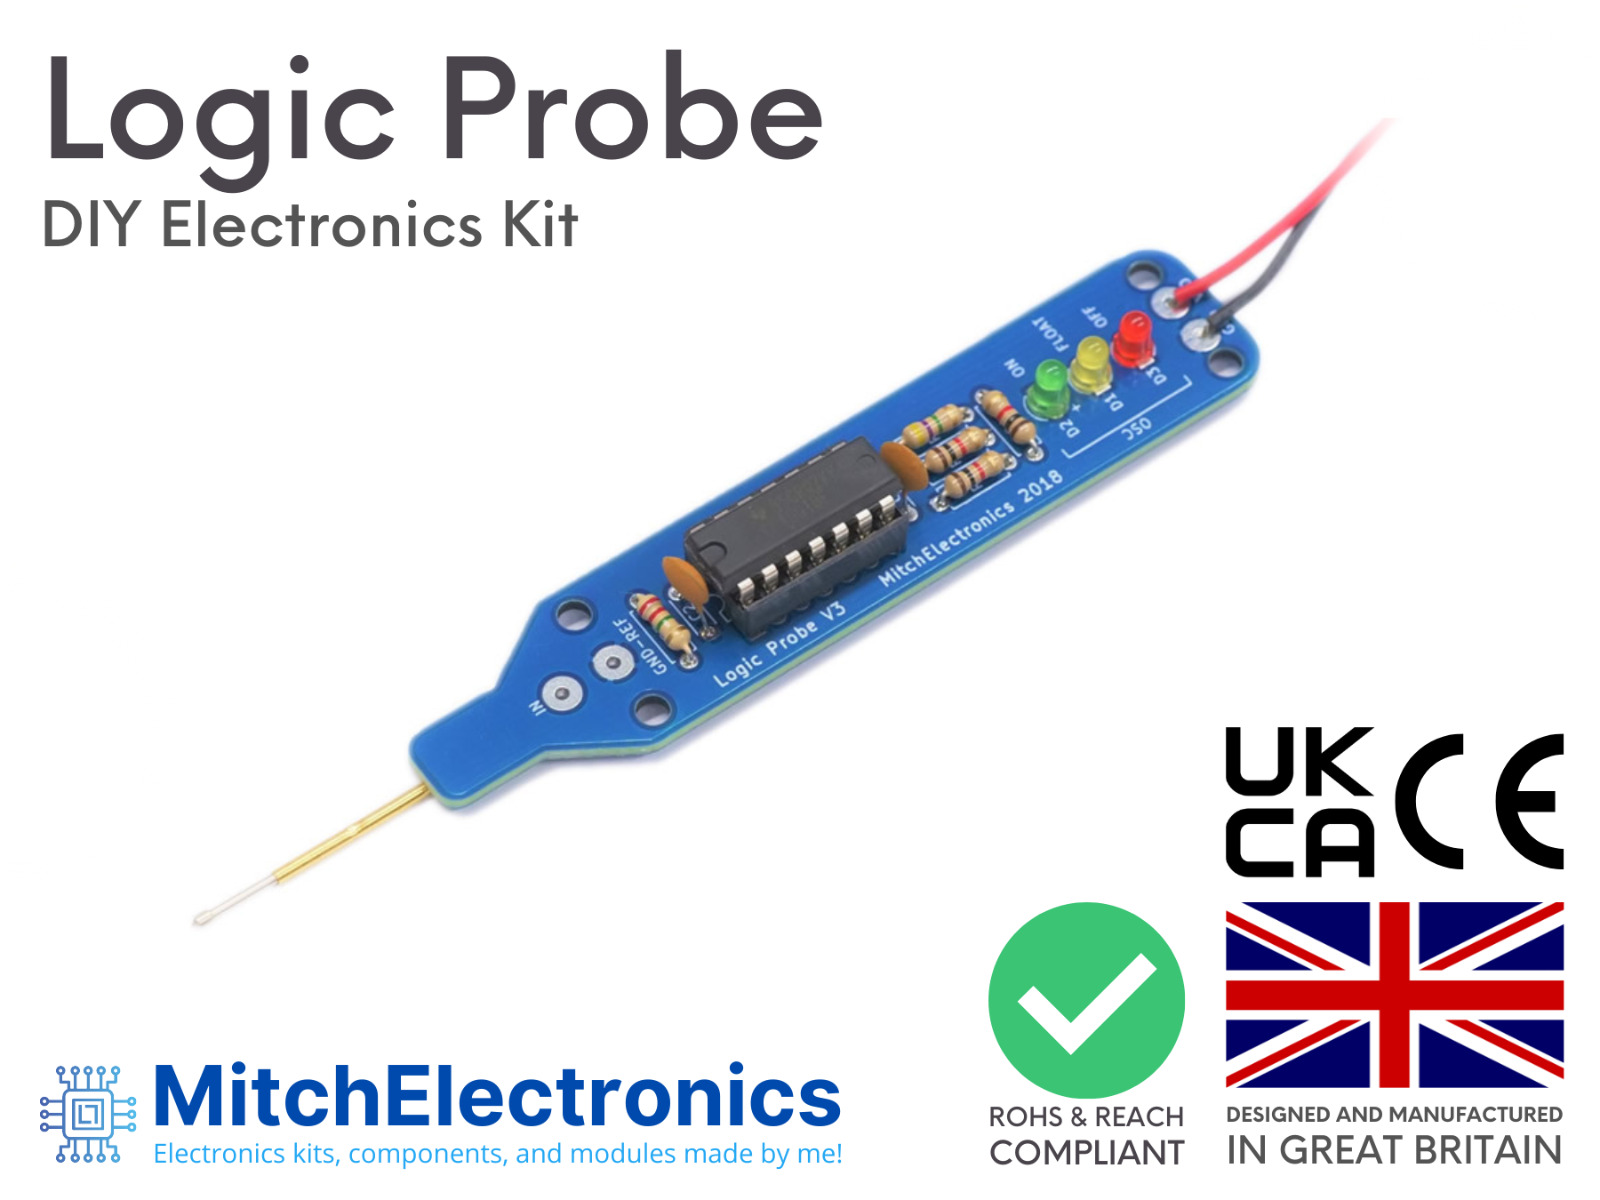 Logic Probe / Electronic DIY Kit